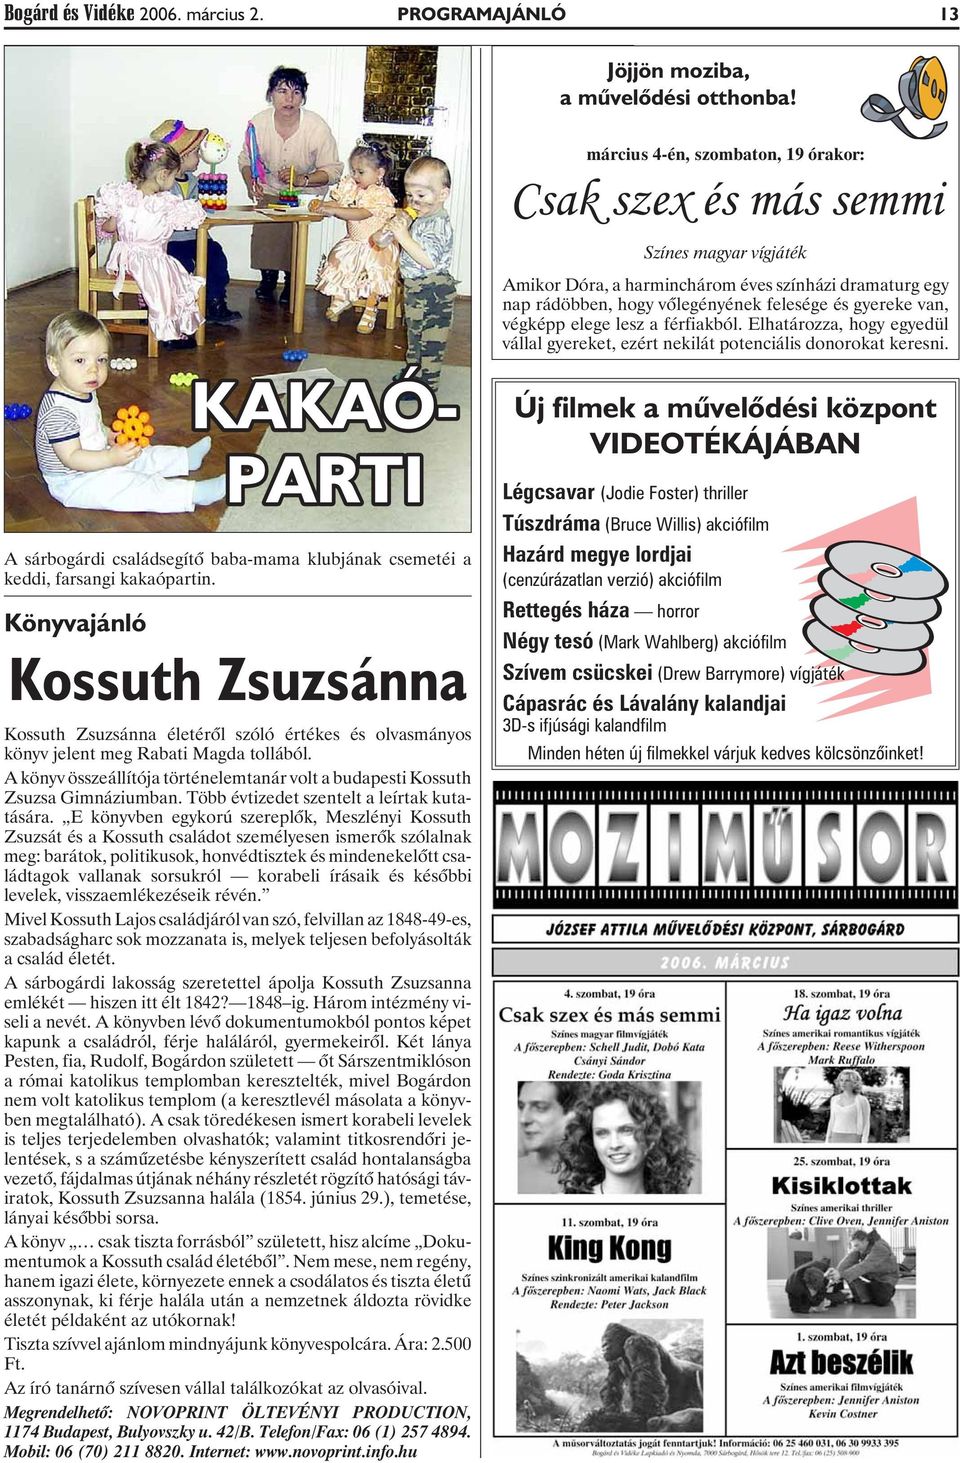 A könyv összeállítója történelemtanár volt a budapesti Kossuth Zsuzsa Gimnáziumban. Több évtizedet szentelt a leírtak kutatására.